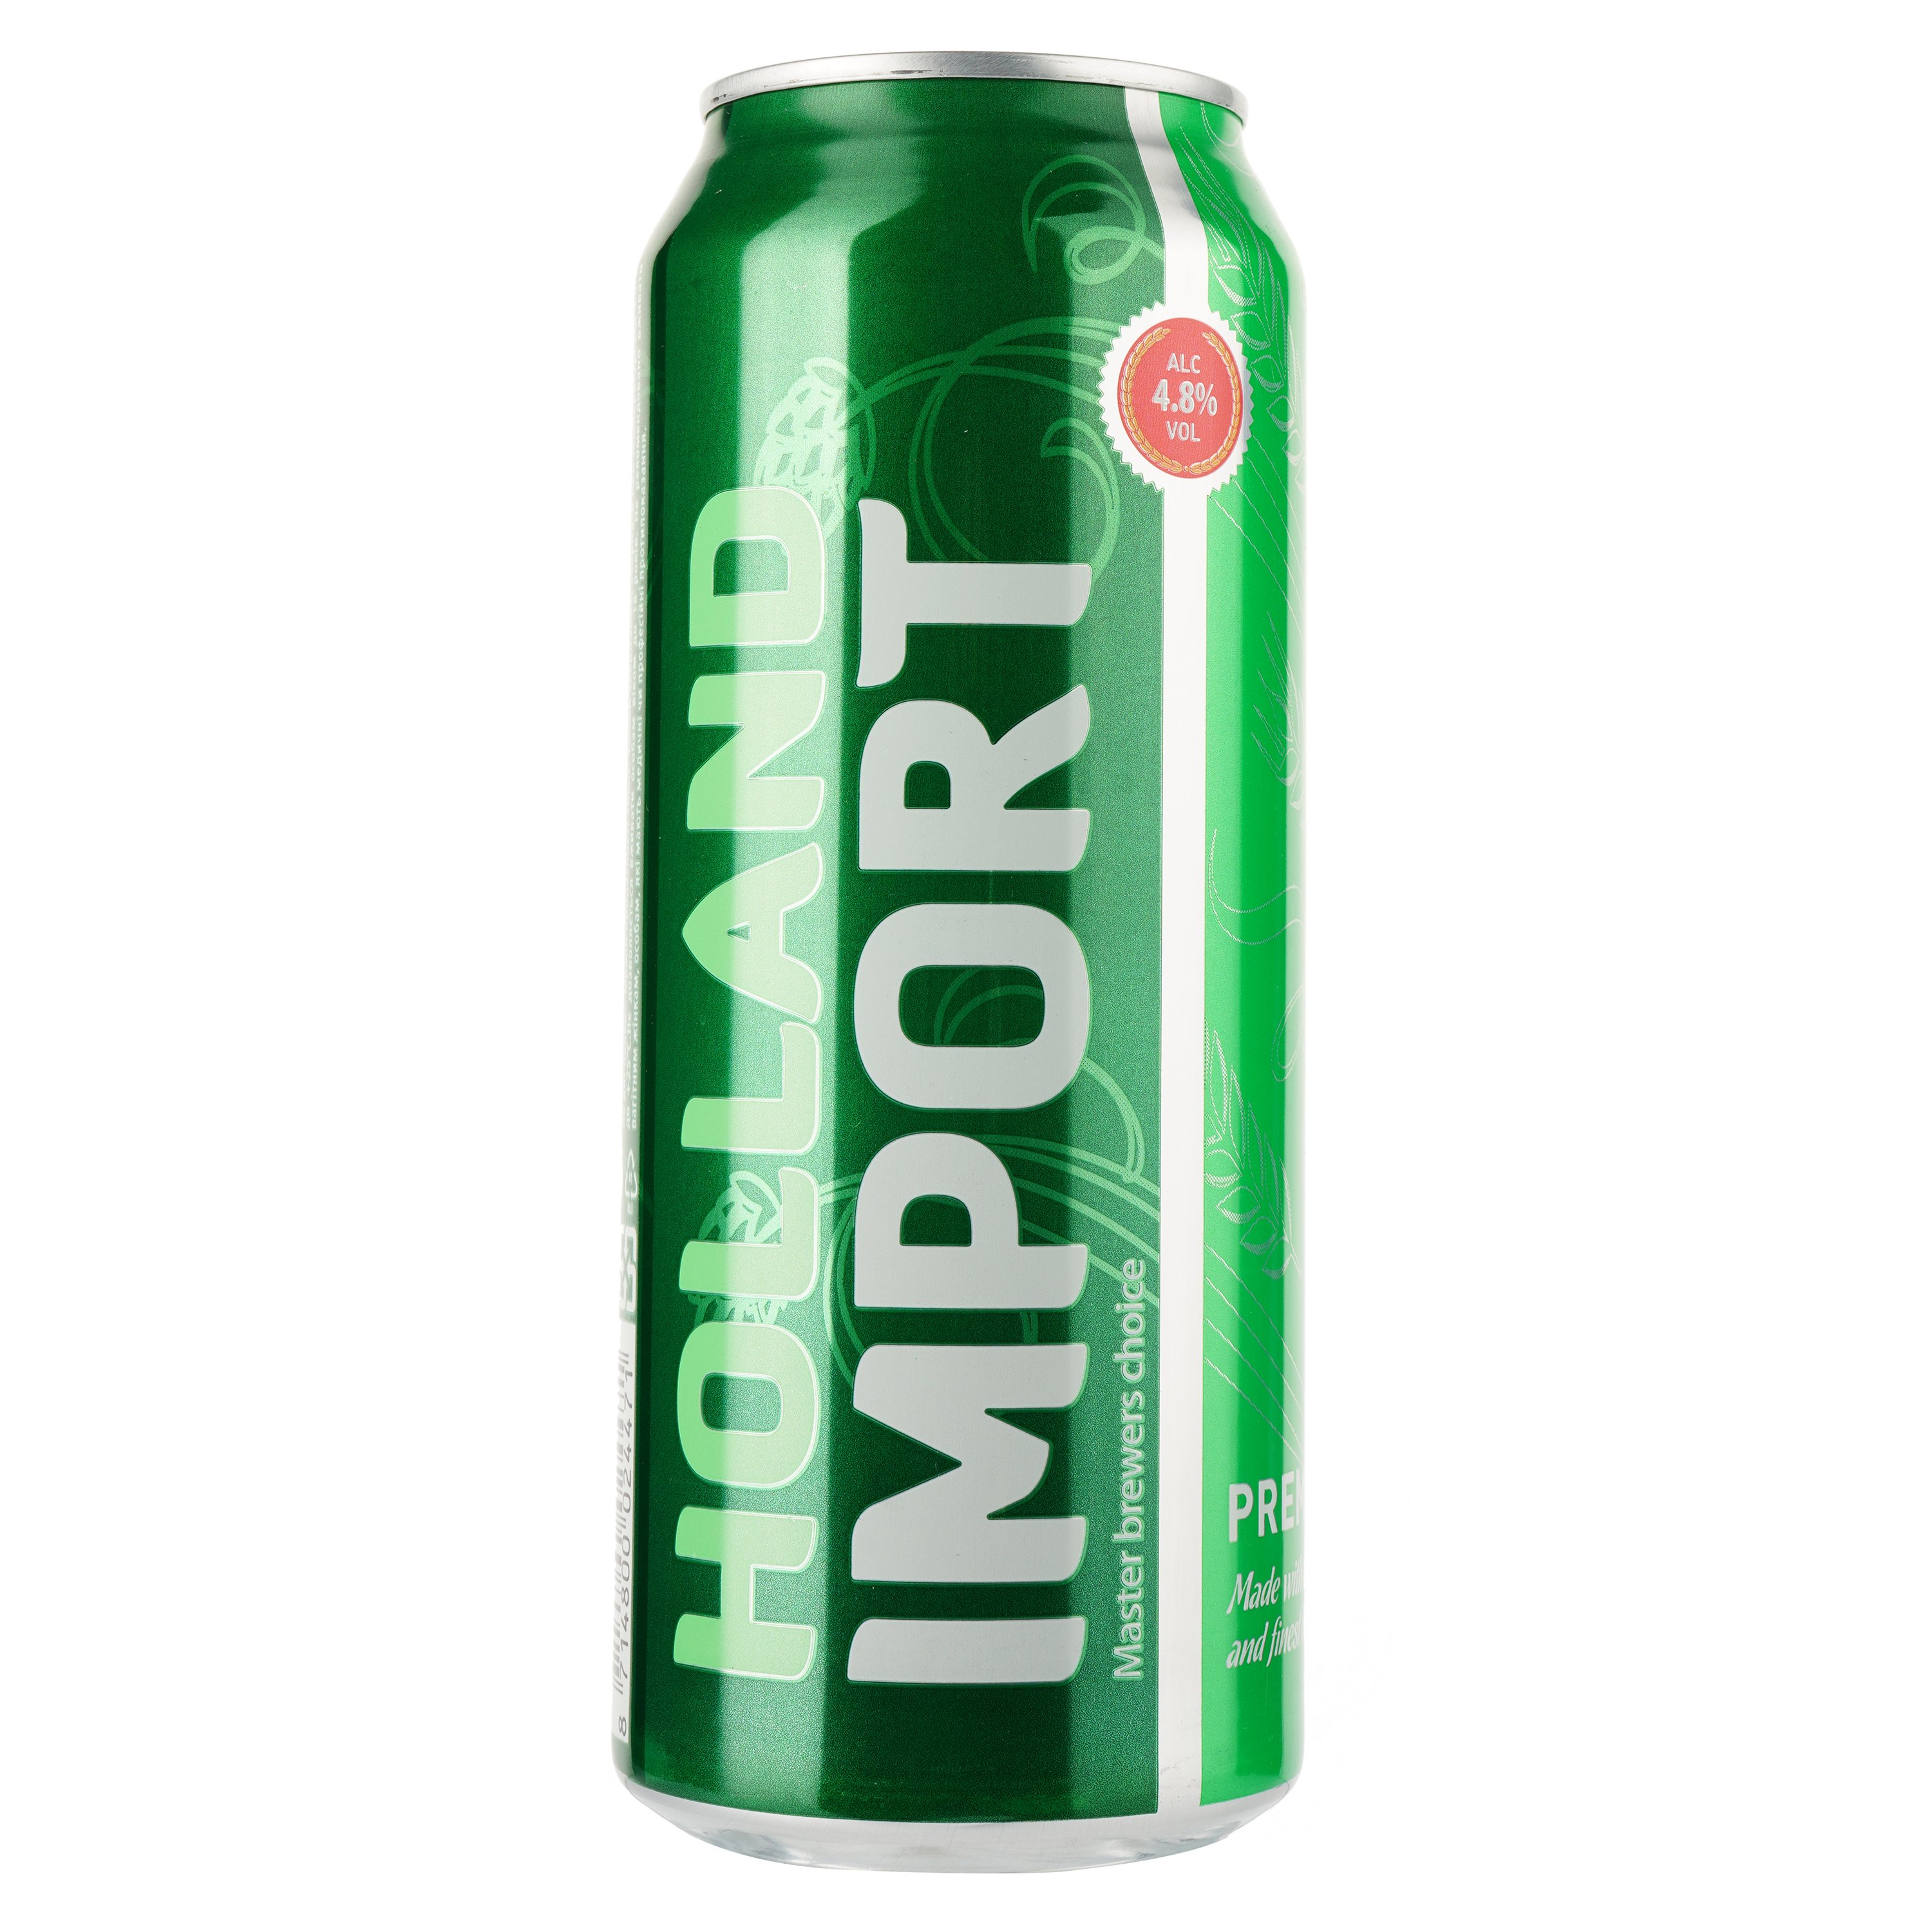 Пиво Holland Import, світле, фільтроване, 4,8%, з/б, 0,5 л - фото 1